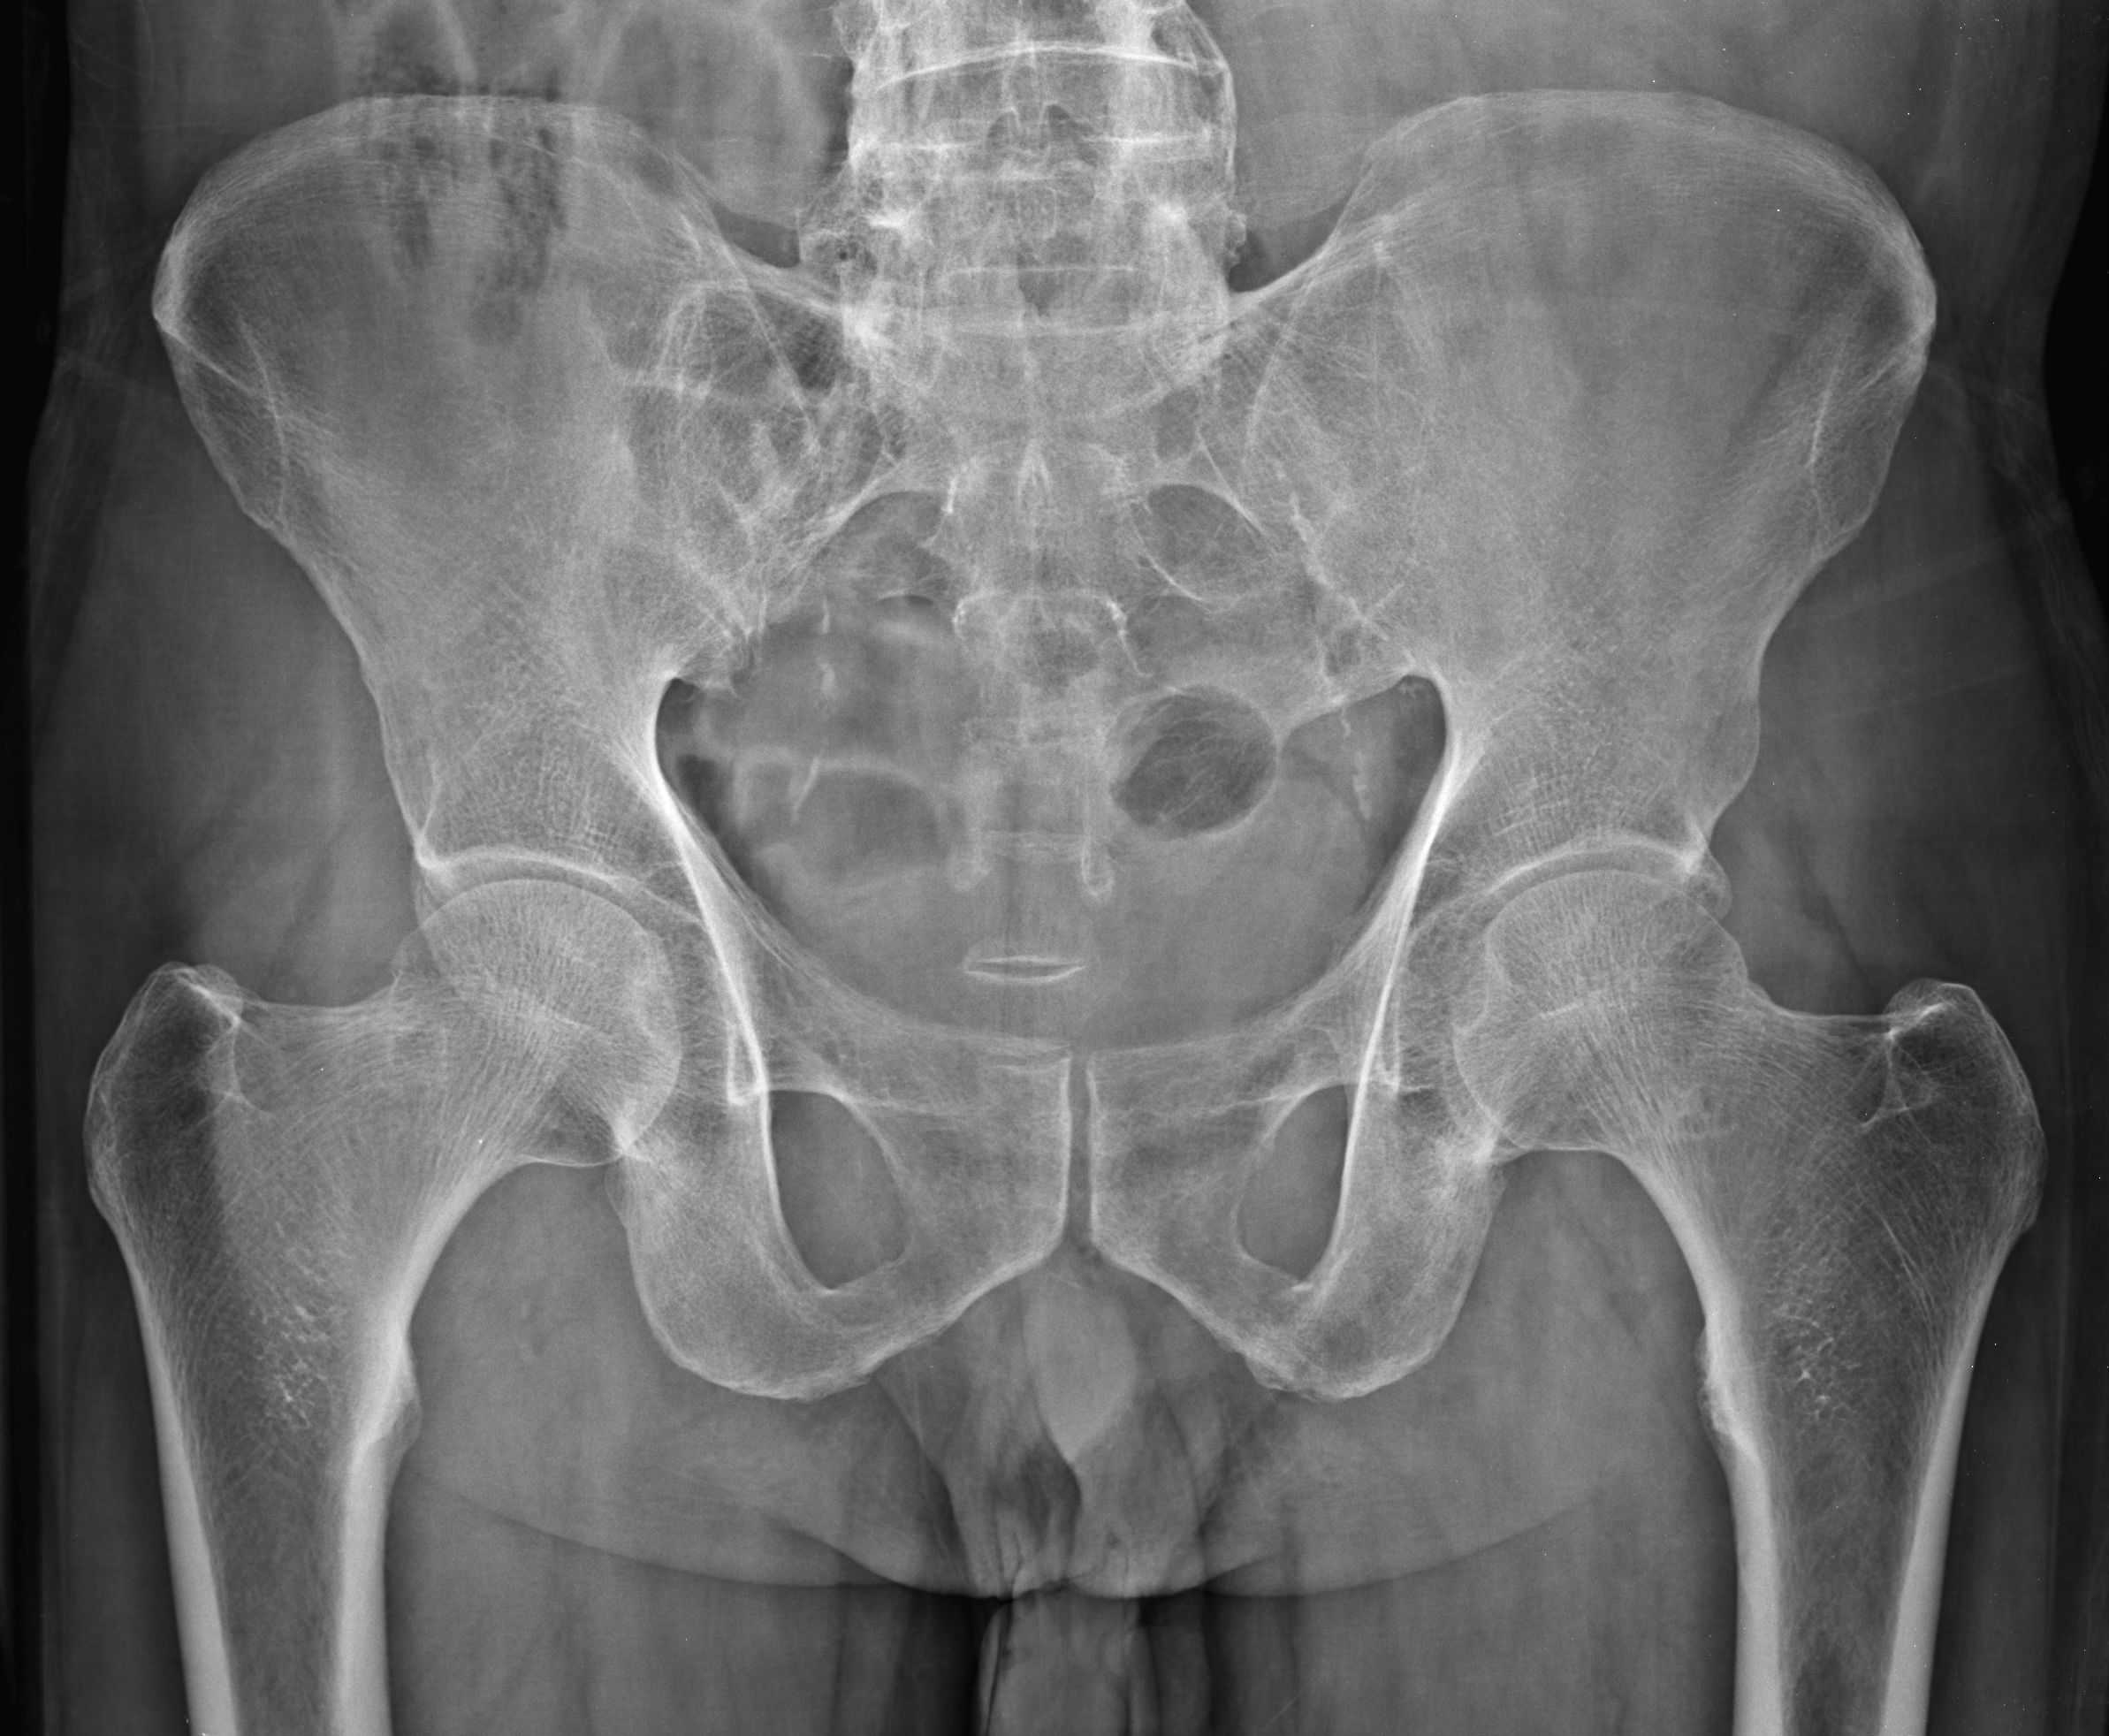 Рентген костей таза: как делают, что показывает рентген, противопоказания